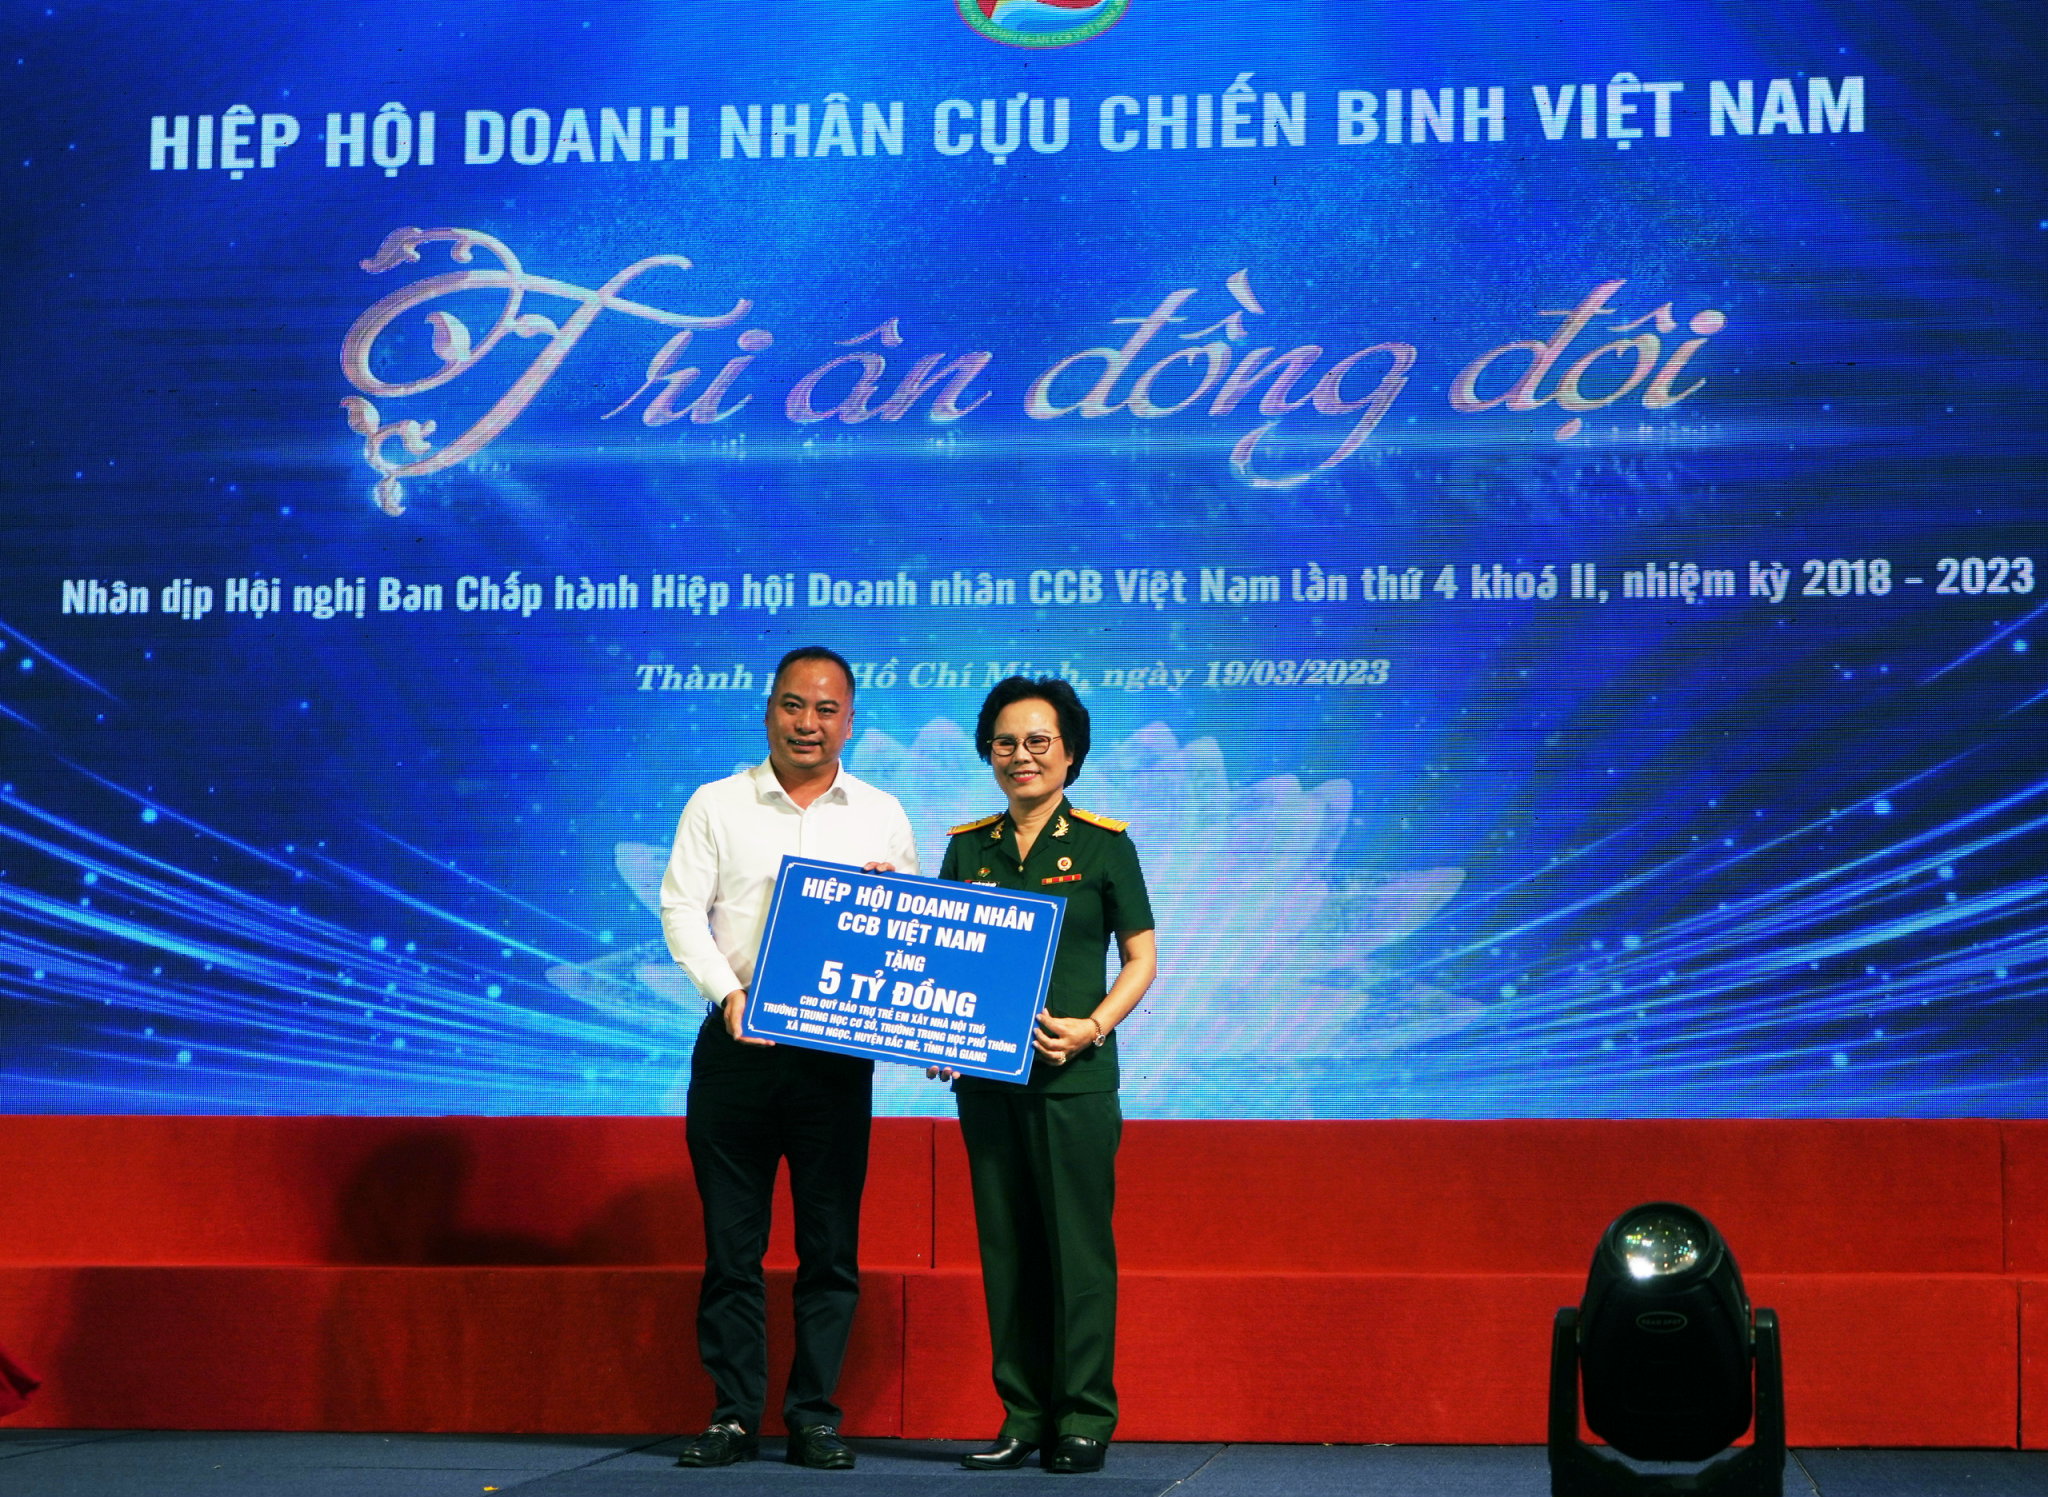 Hiệp hội Doanh nhân cựu chiến binh Việt Nam trao hỗ trợ 05 tỷ đồng xây dựng công trình nhà nội trú cho trẻ em dân tộc tỉnh Hà Giang